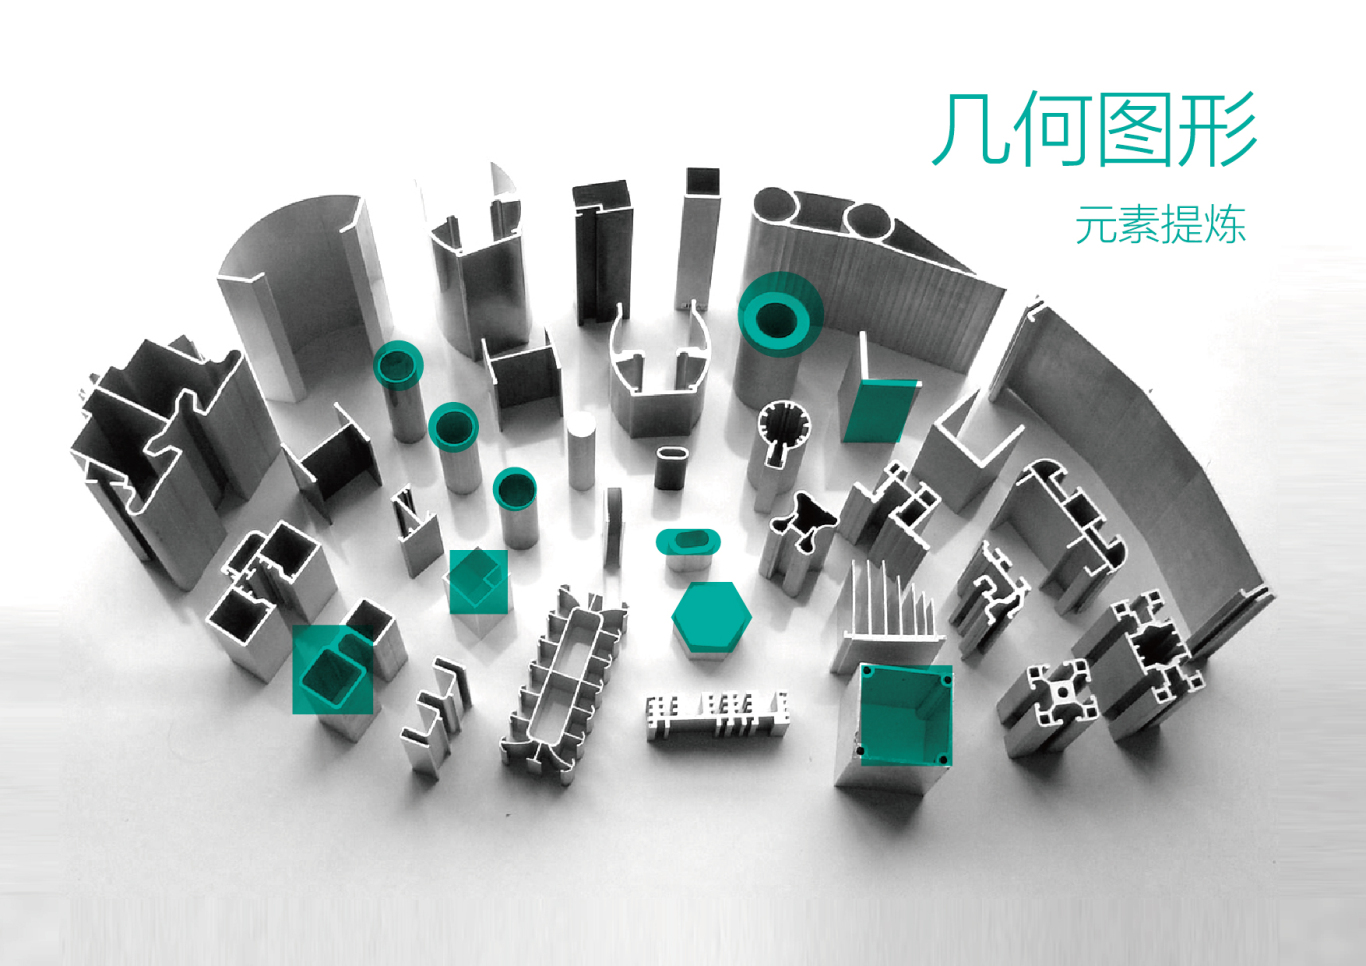 上海比迪工业铝型材配件有限公司标志图12